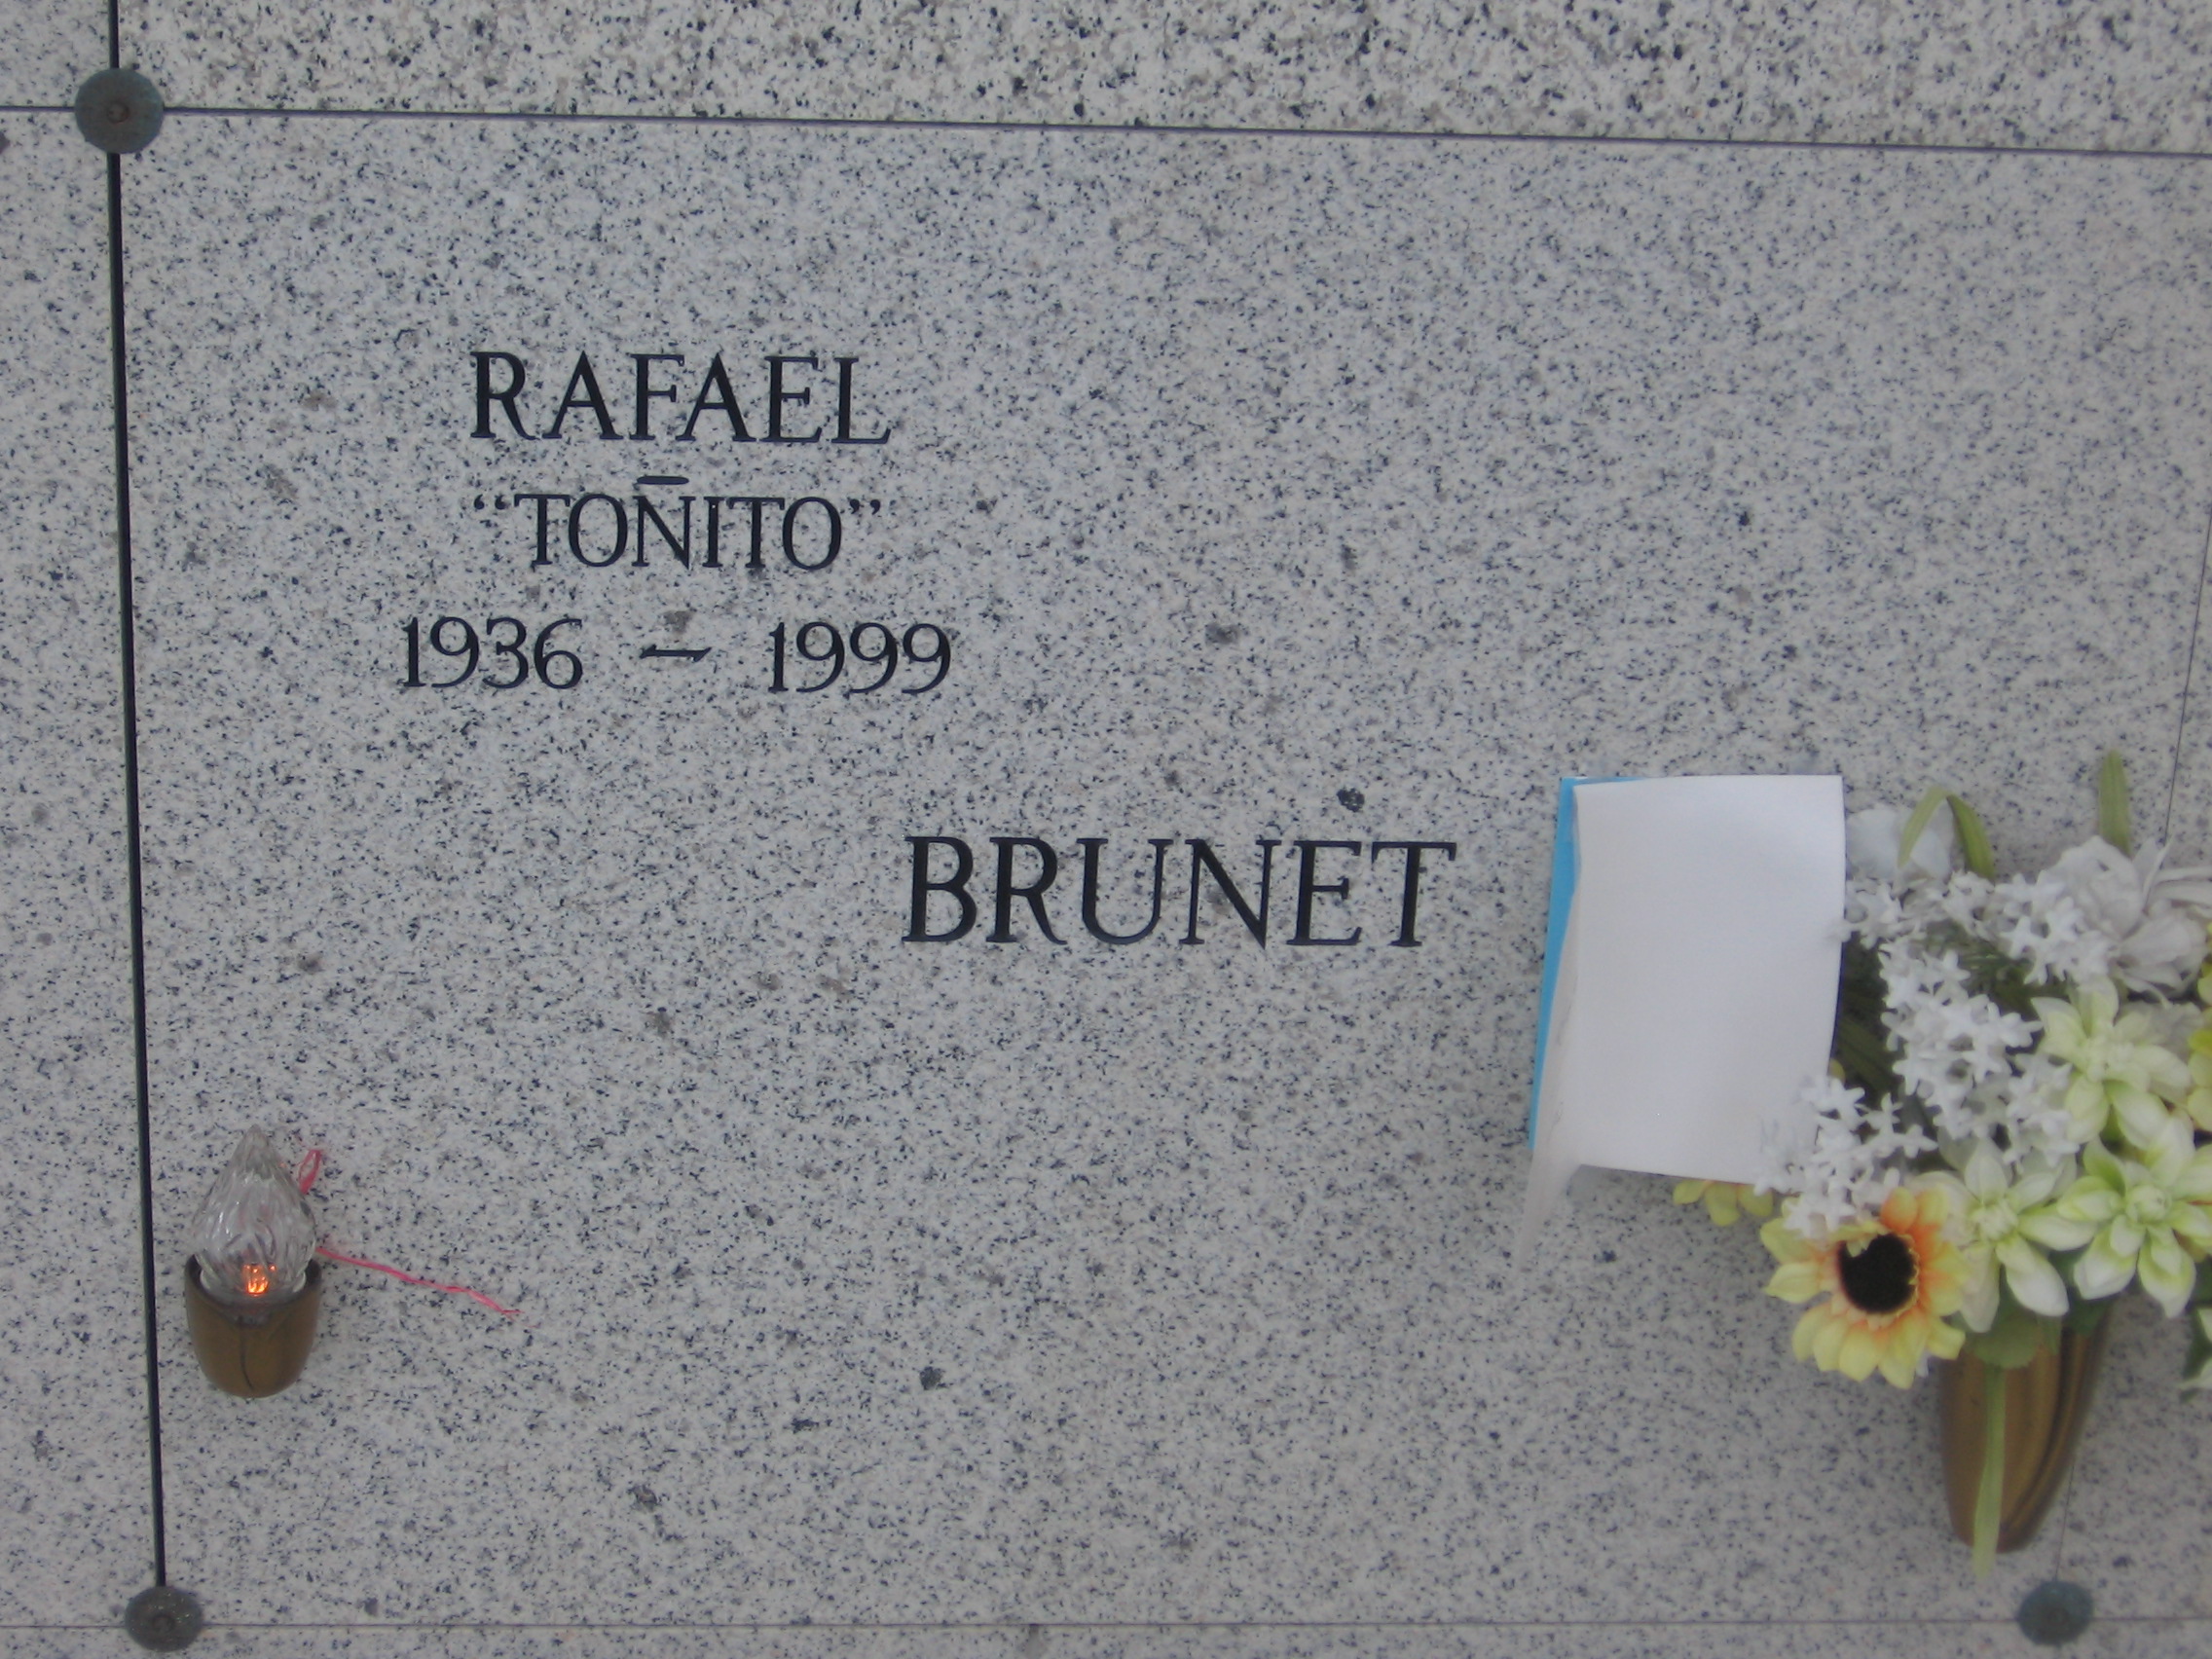 Rafael "Tonito" Brunet